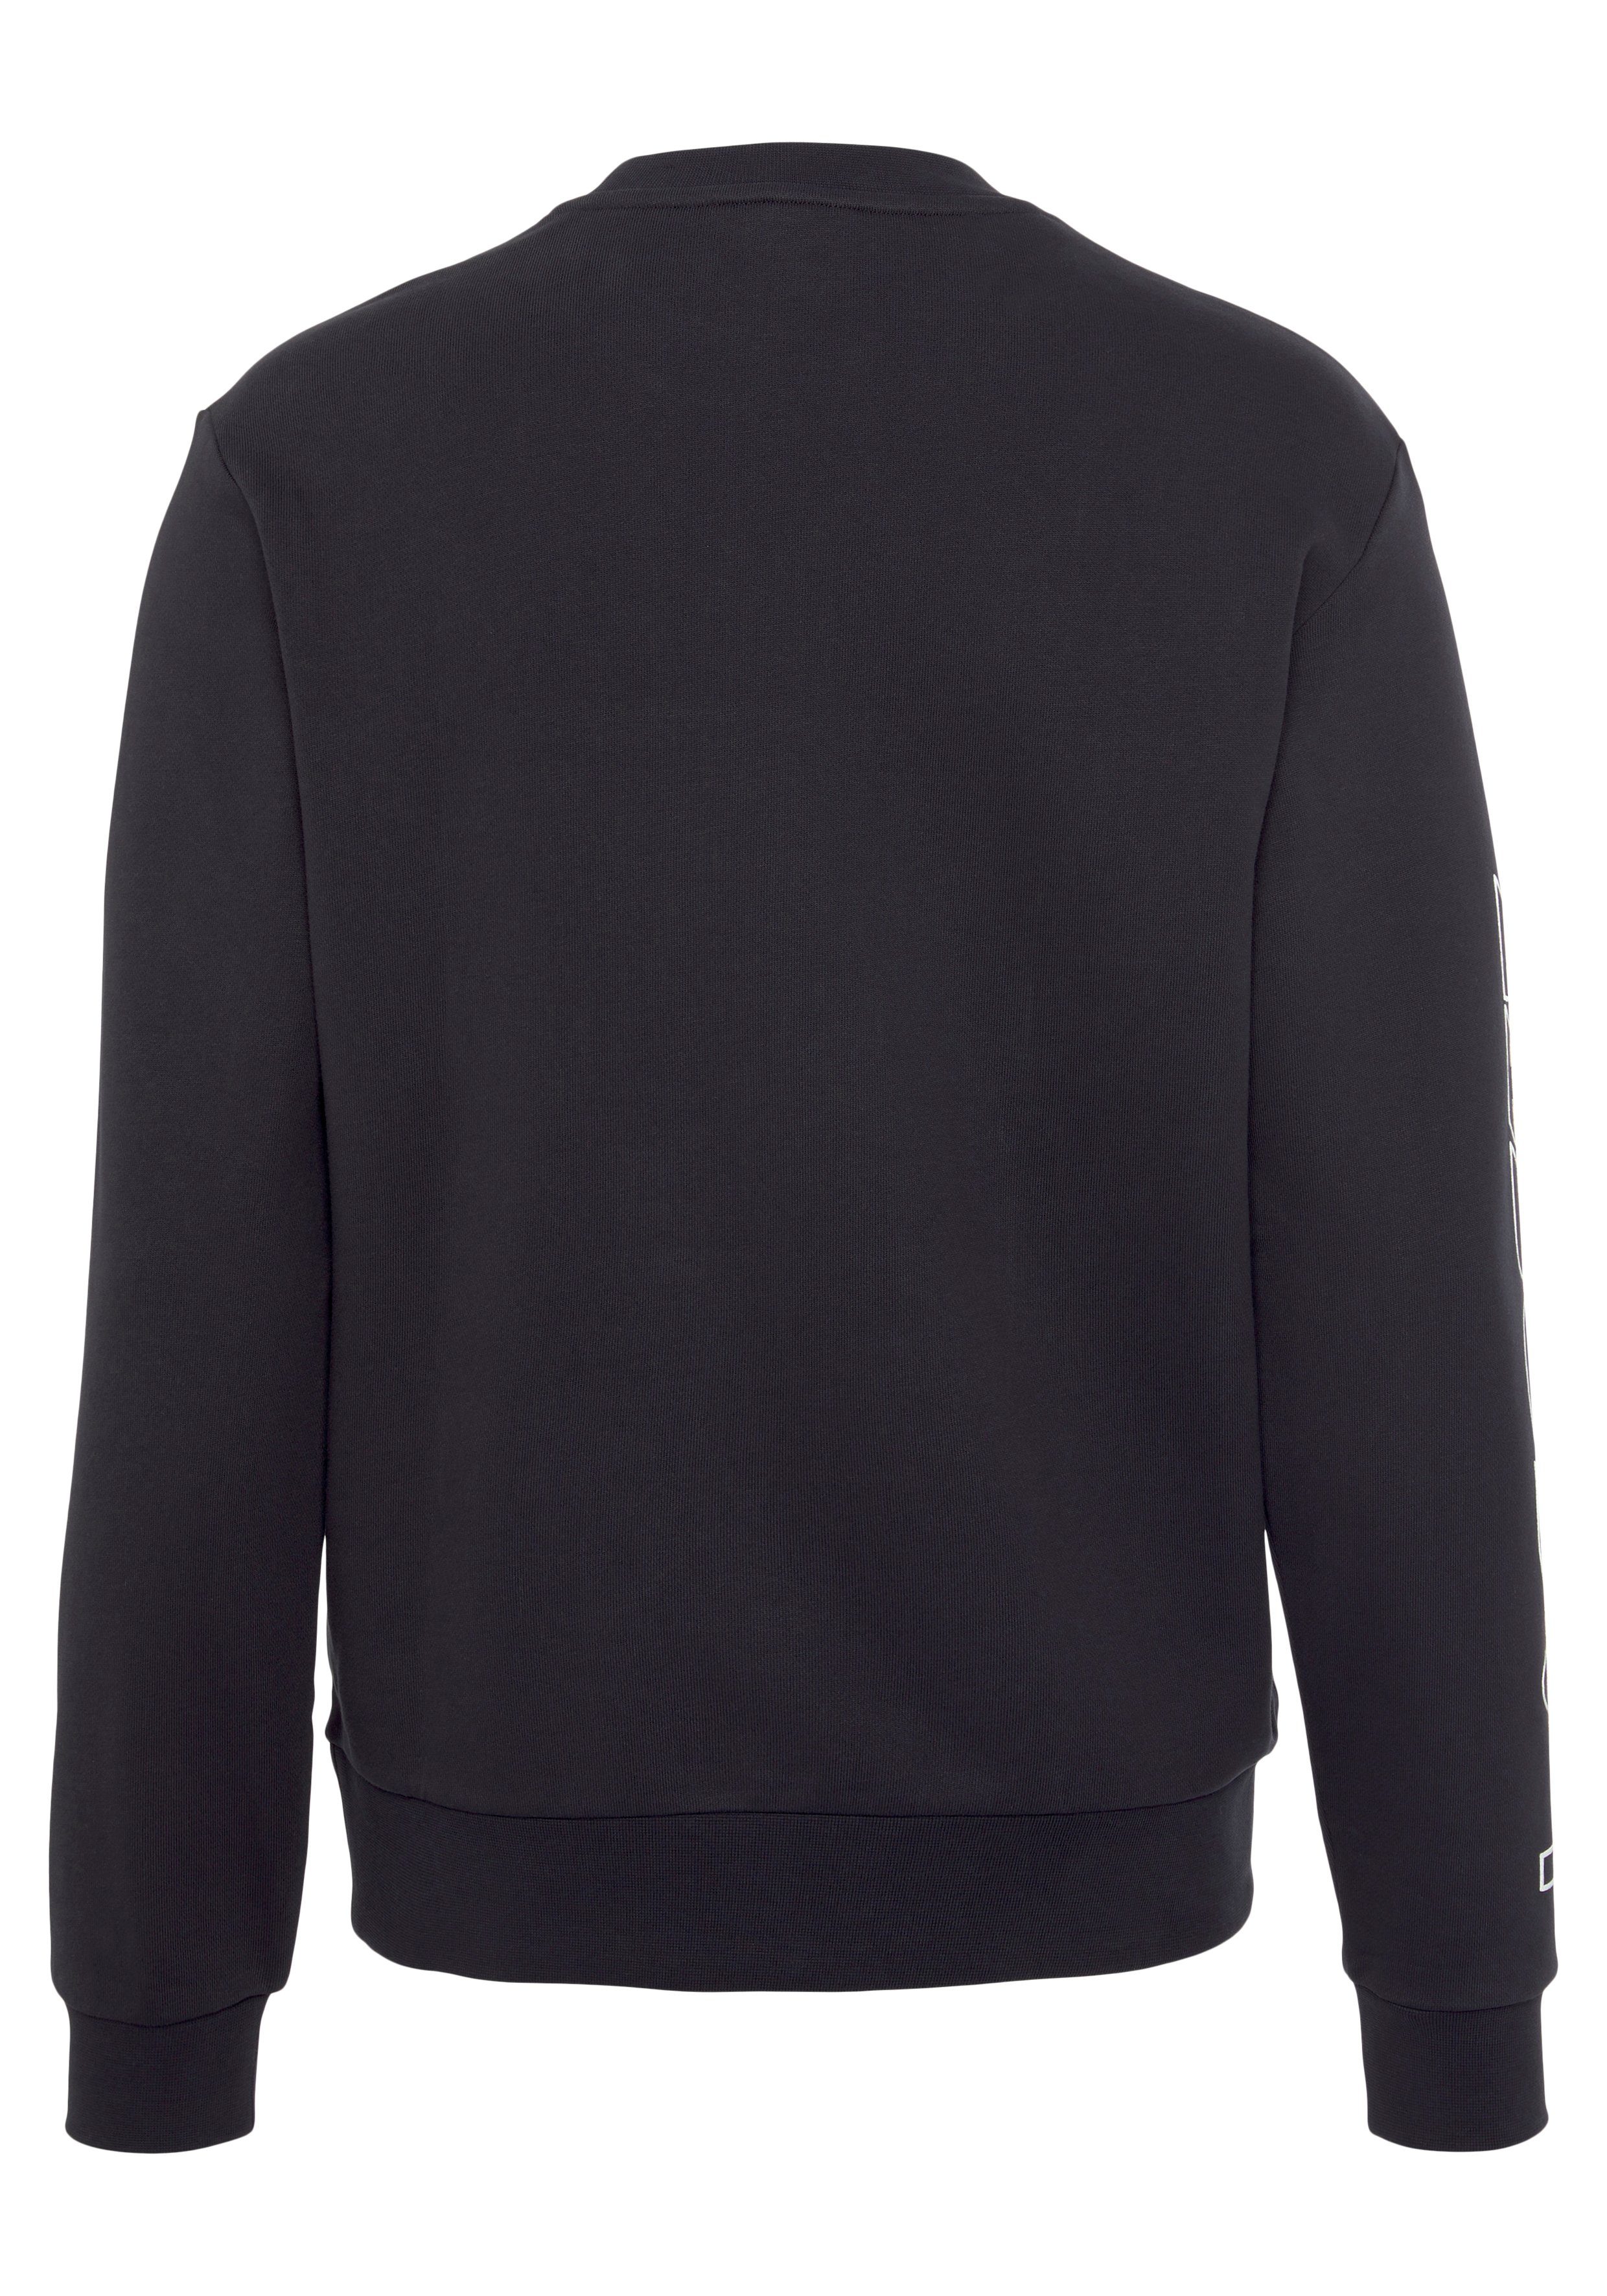 Lacoste Sweatshirt SWEATSHIRT mit auf modischem dem Logoschriftzug marine Ärmel